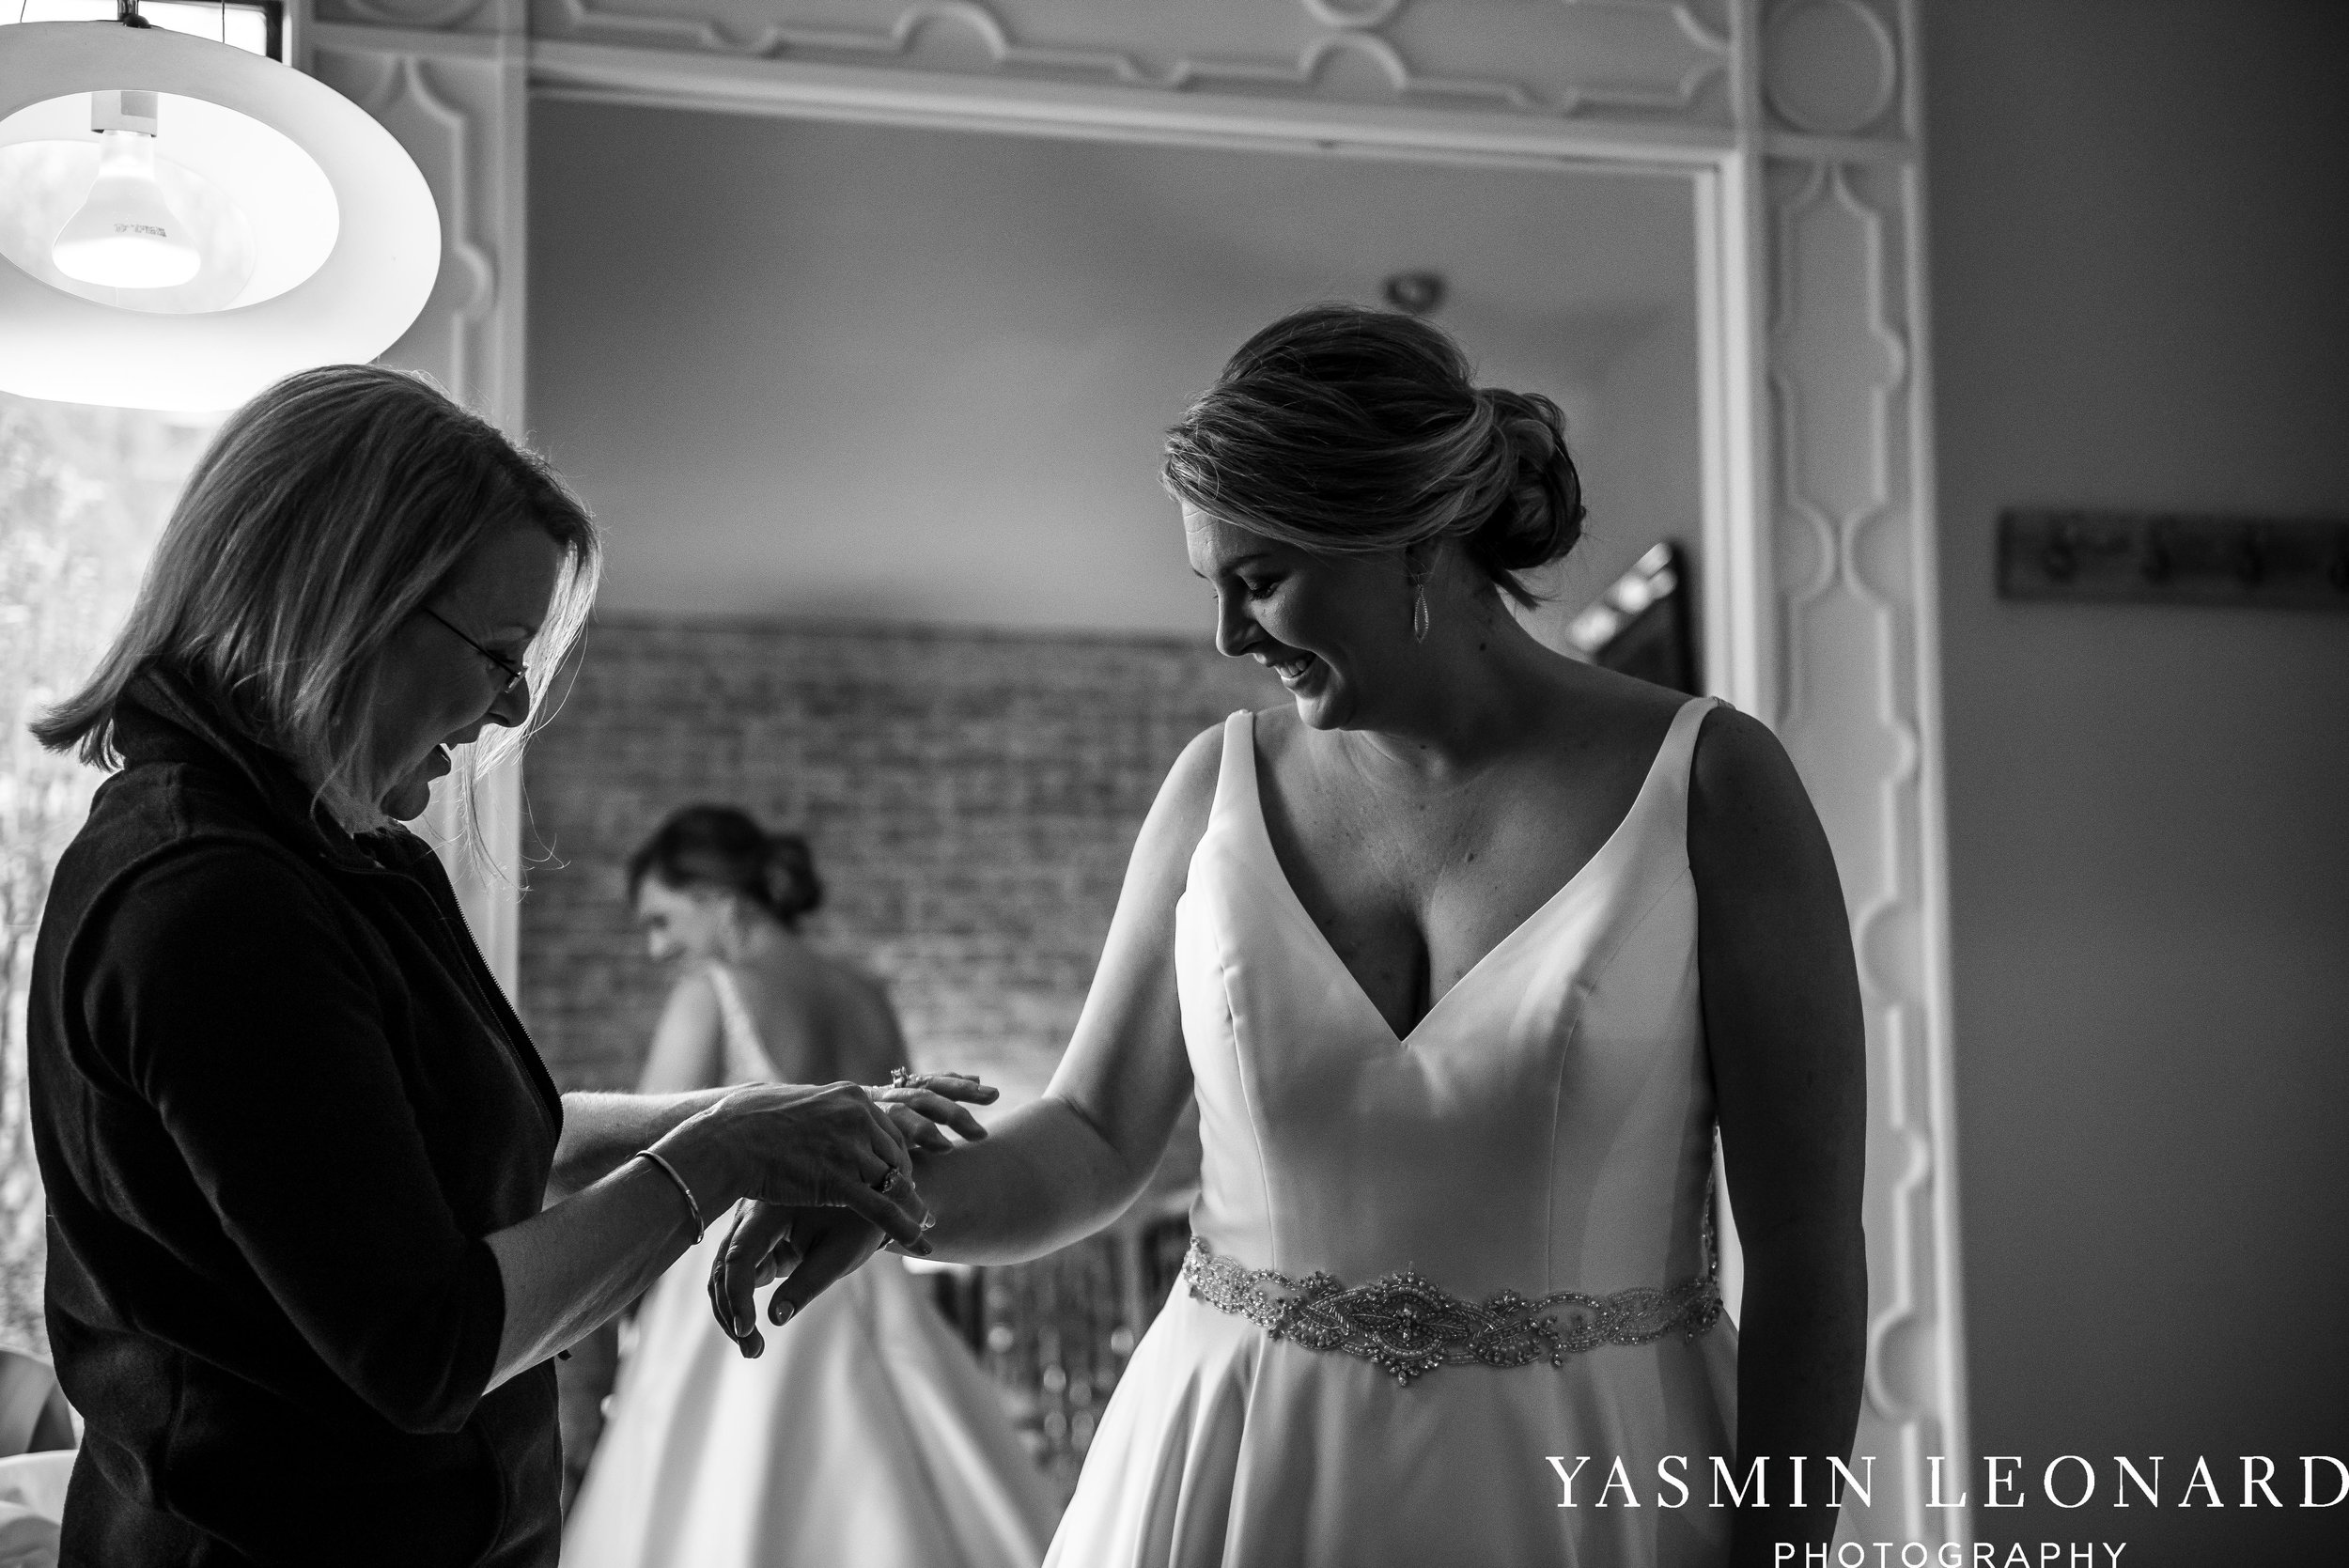 Adaumont Farm - Wesley Memorial Weddings - High Point Weddings - Just Priceless - NC Wedding Photographer - Yasmin Leonard Photography - High Point Wedding Vendors-10.jpg